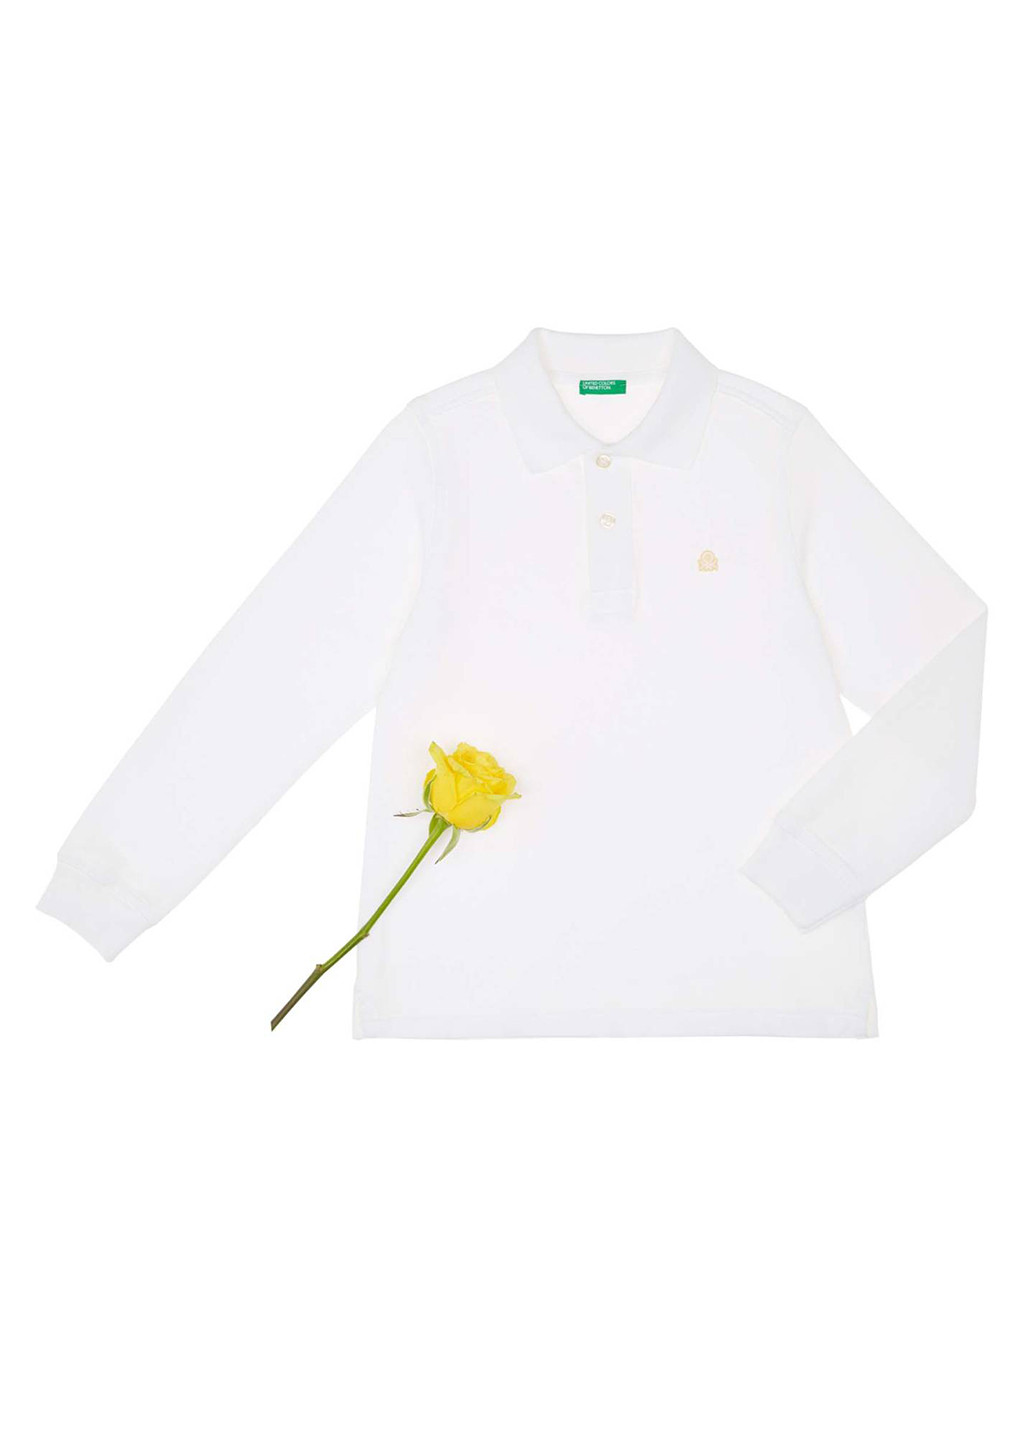 Белая детская футболка-поло для мальчика United Colors of Benetton с логотипом